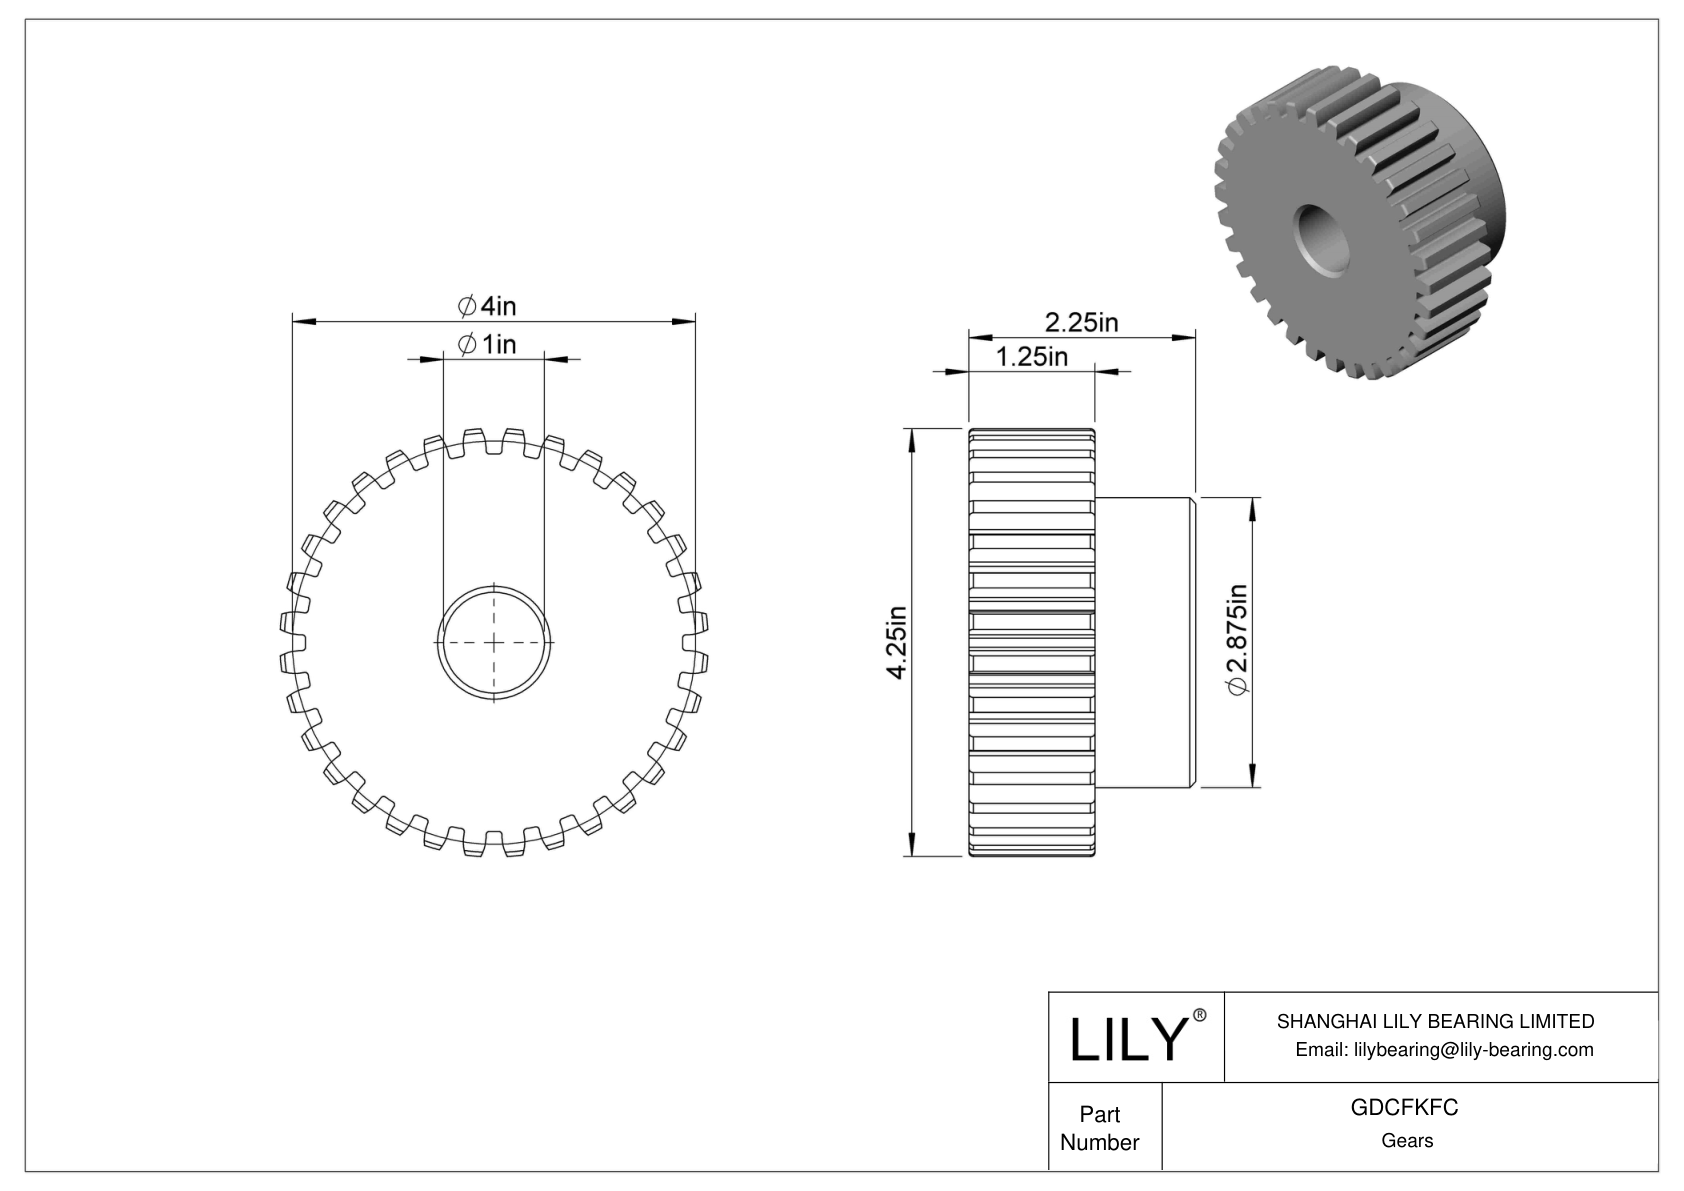 GDCFKFC Engranajes metálicos - Ángulo de presión de 14 1/2 dibujo cad